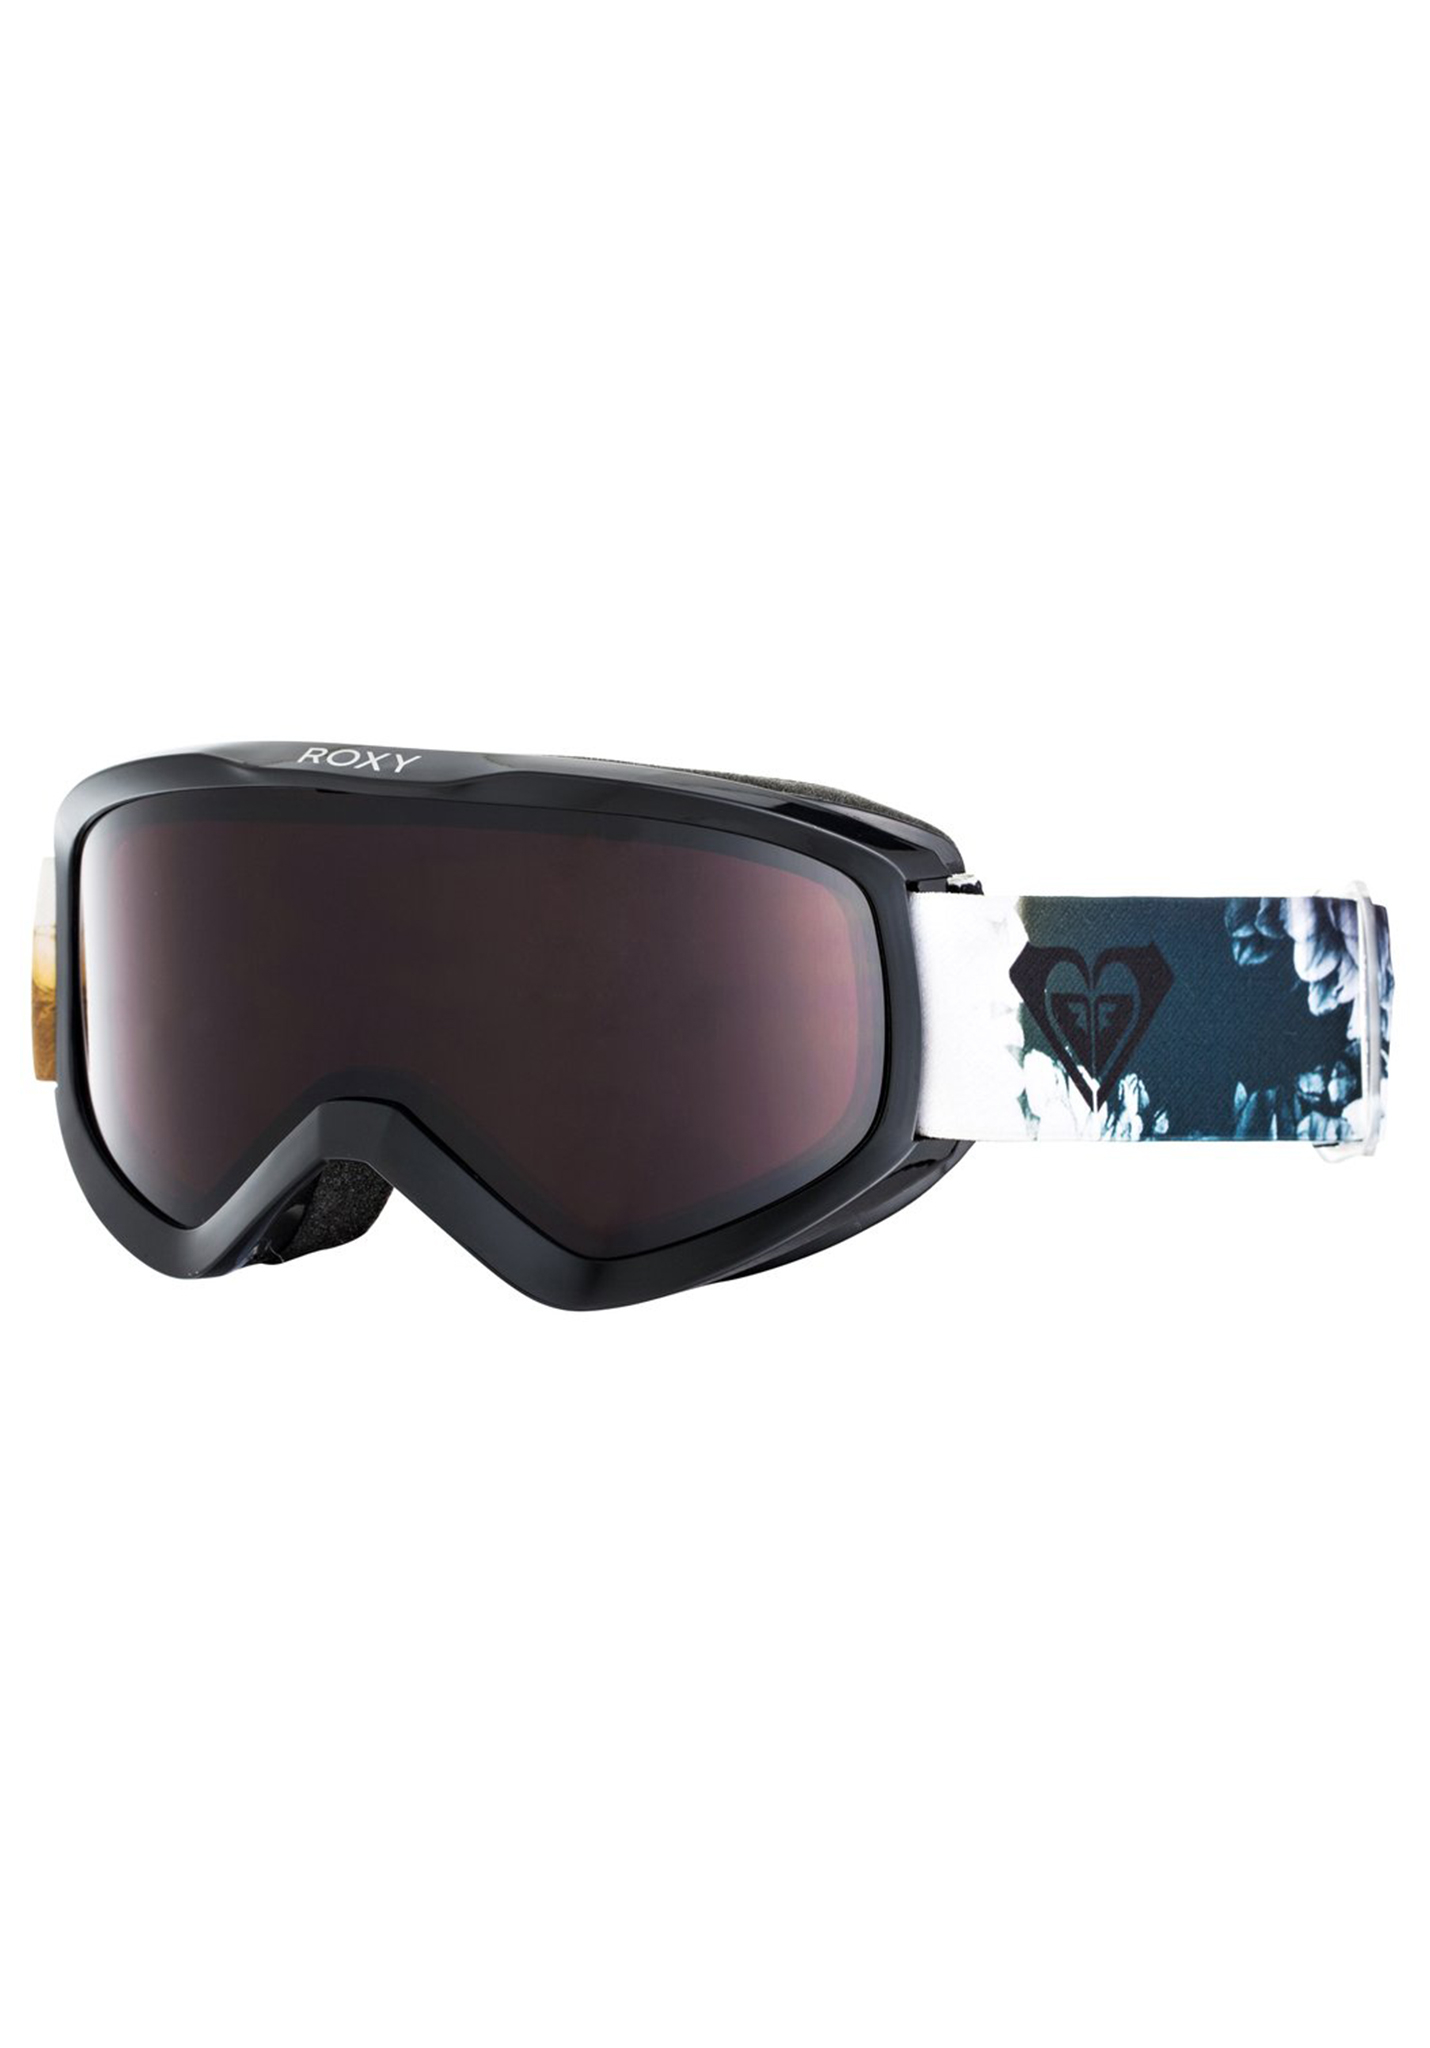 Roxy Day Dream Snowboardbrillen echter schwarzer tintenfleck One Size